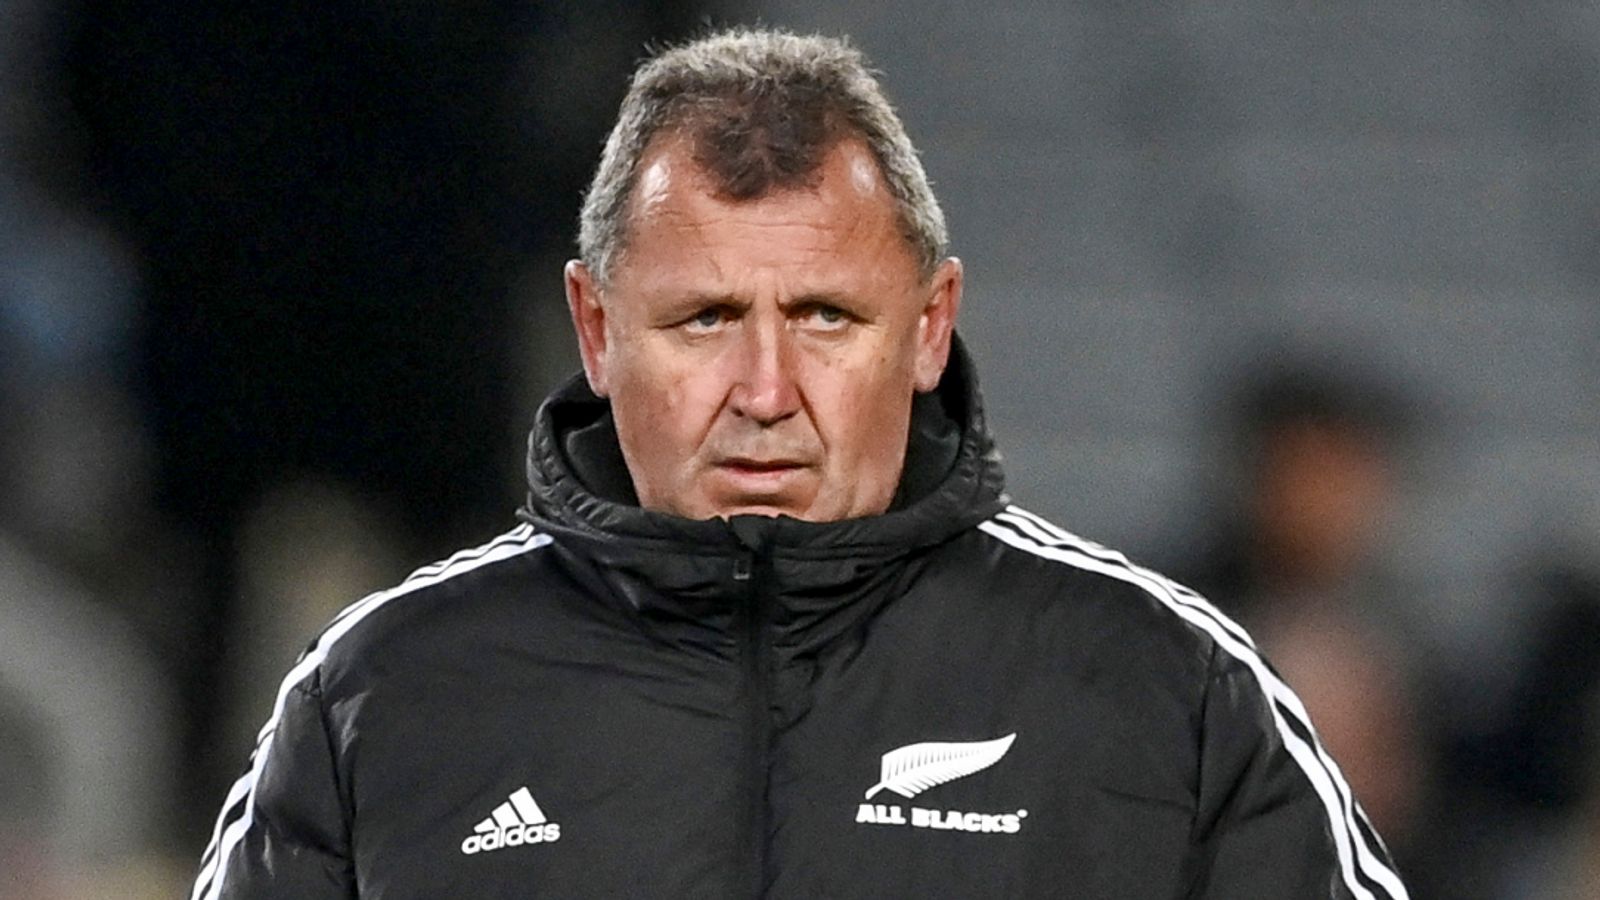 Championnat de rugby : Ian Foster et les All Blacks sous une pression intense pour livrer en Afrique du Sud |  Actualités du rugby à XV